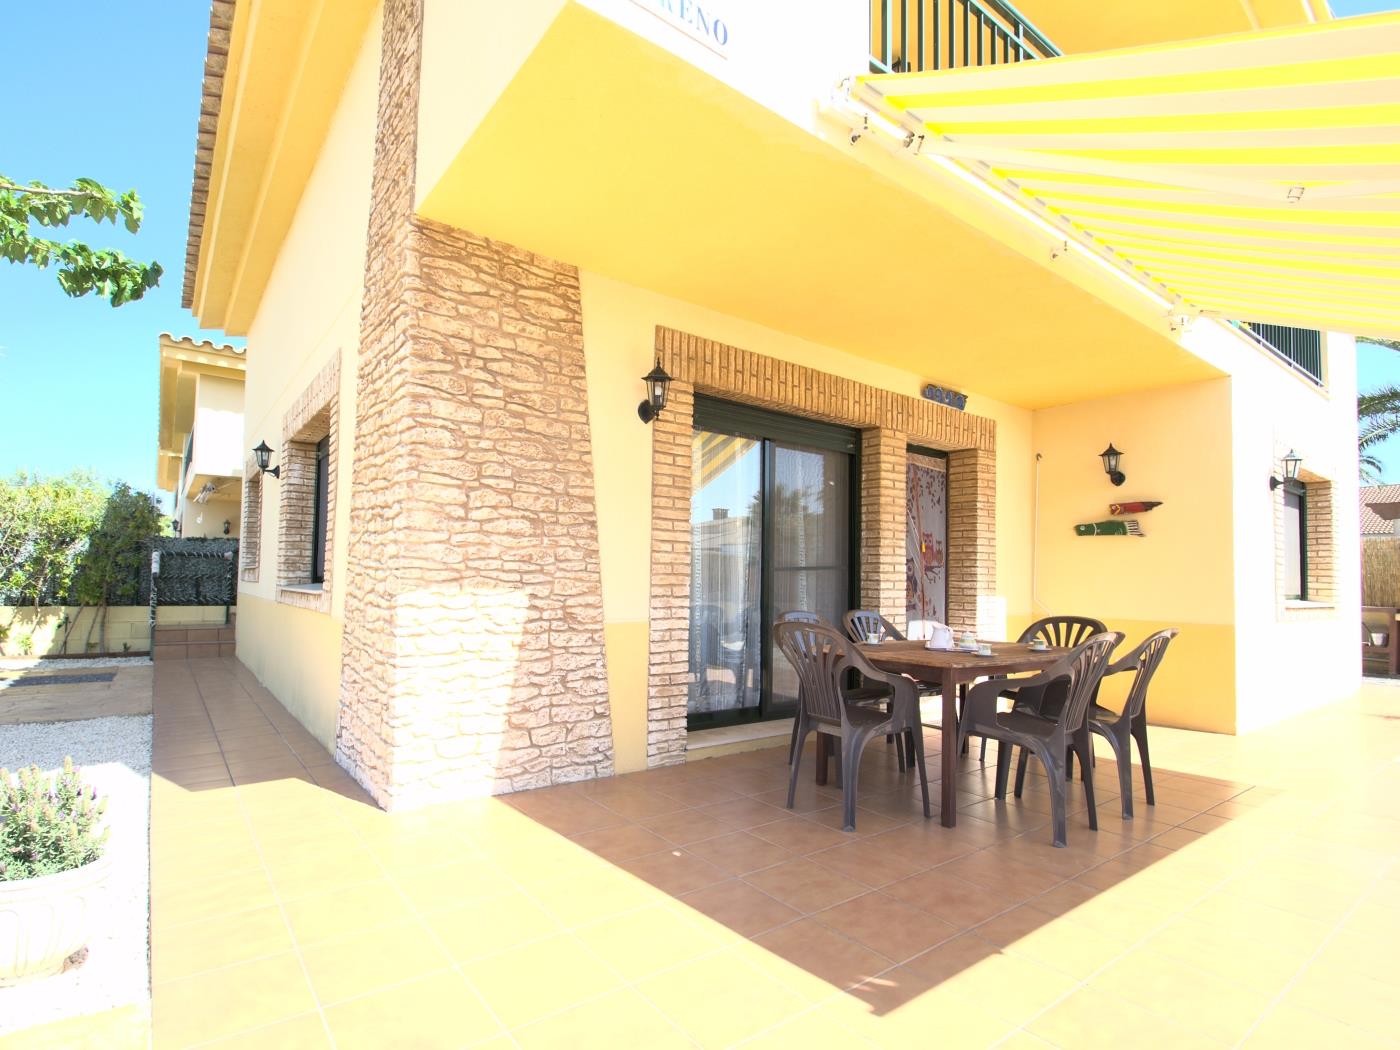 Villa Moreno per a 6 persones i piscina privada a Riumar Deltebre